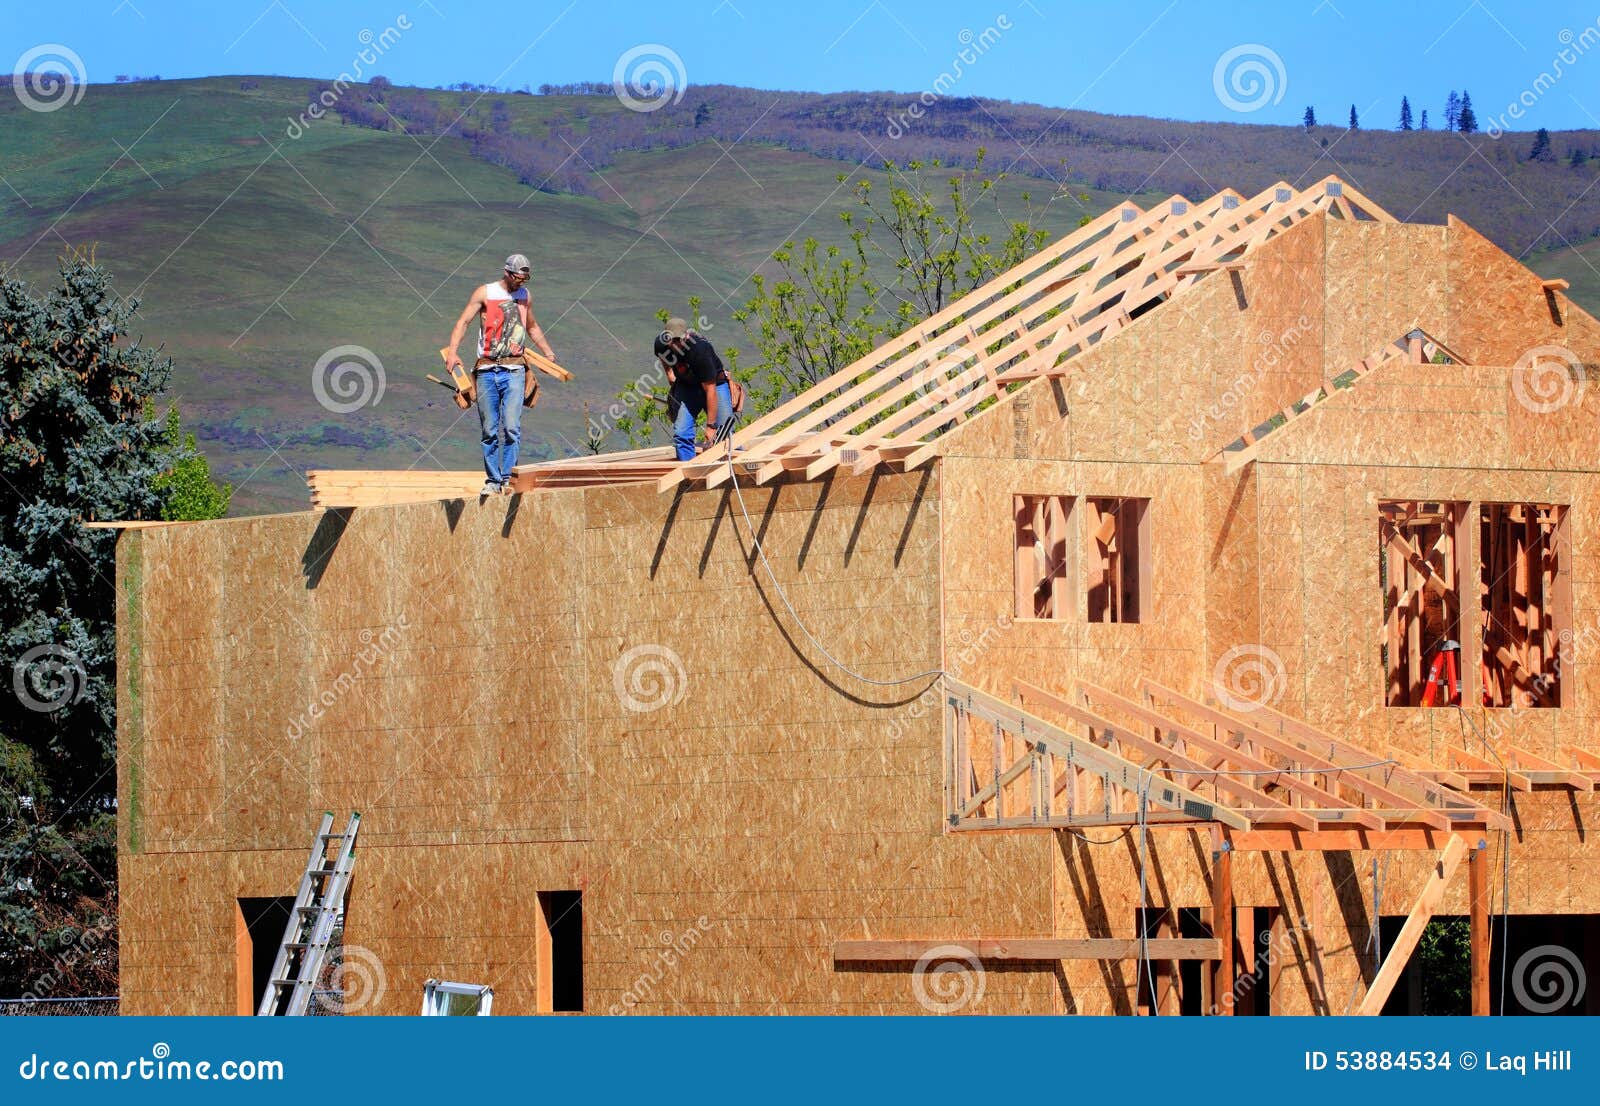 carpenters setting trusses